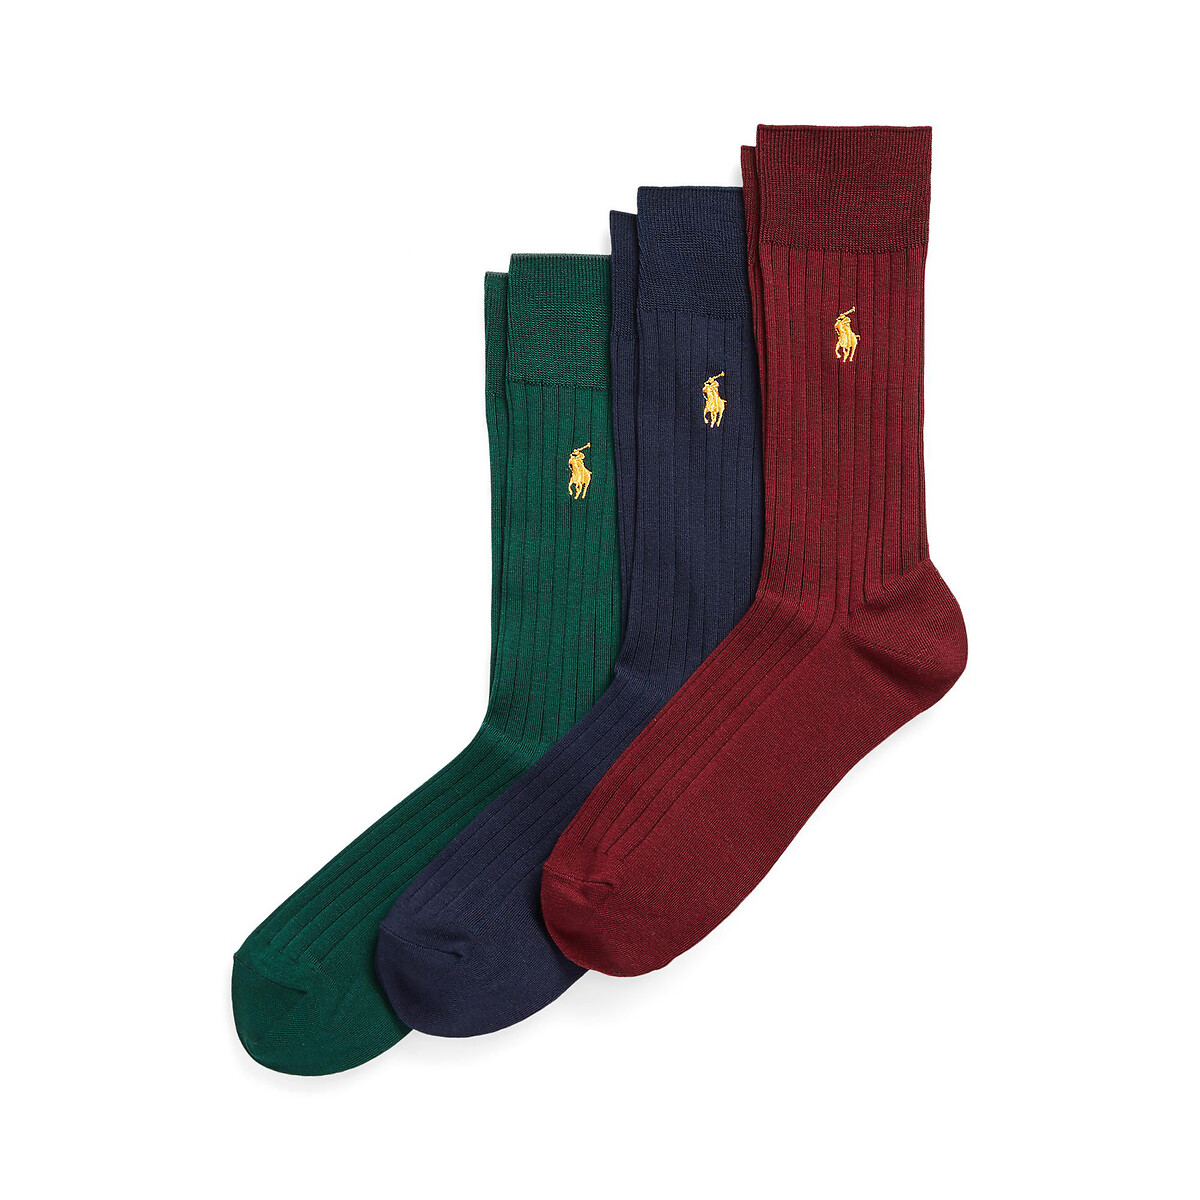 Комплект из трех пар носков из египетского хлопка  39/42 зеленый LaRedoute, размер 39/42 Комплект из трех пар носков из египетского хлопка  39/42 зеленый - фото 1